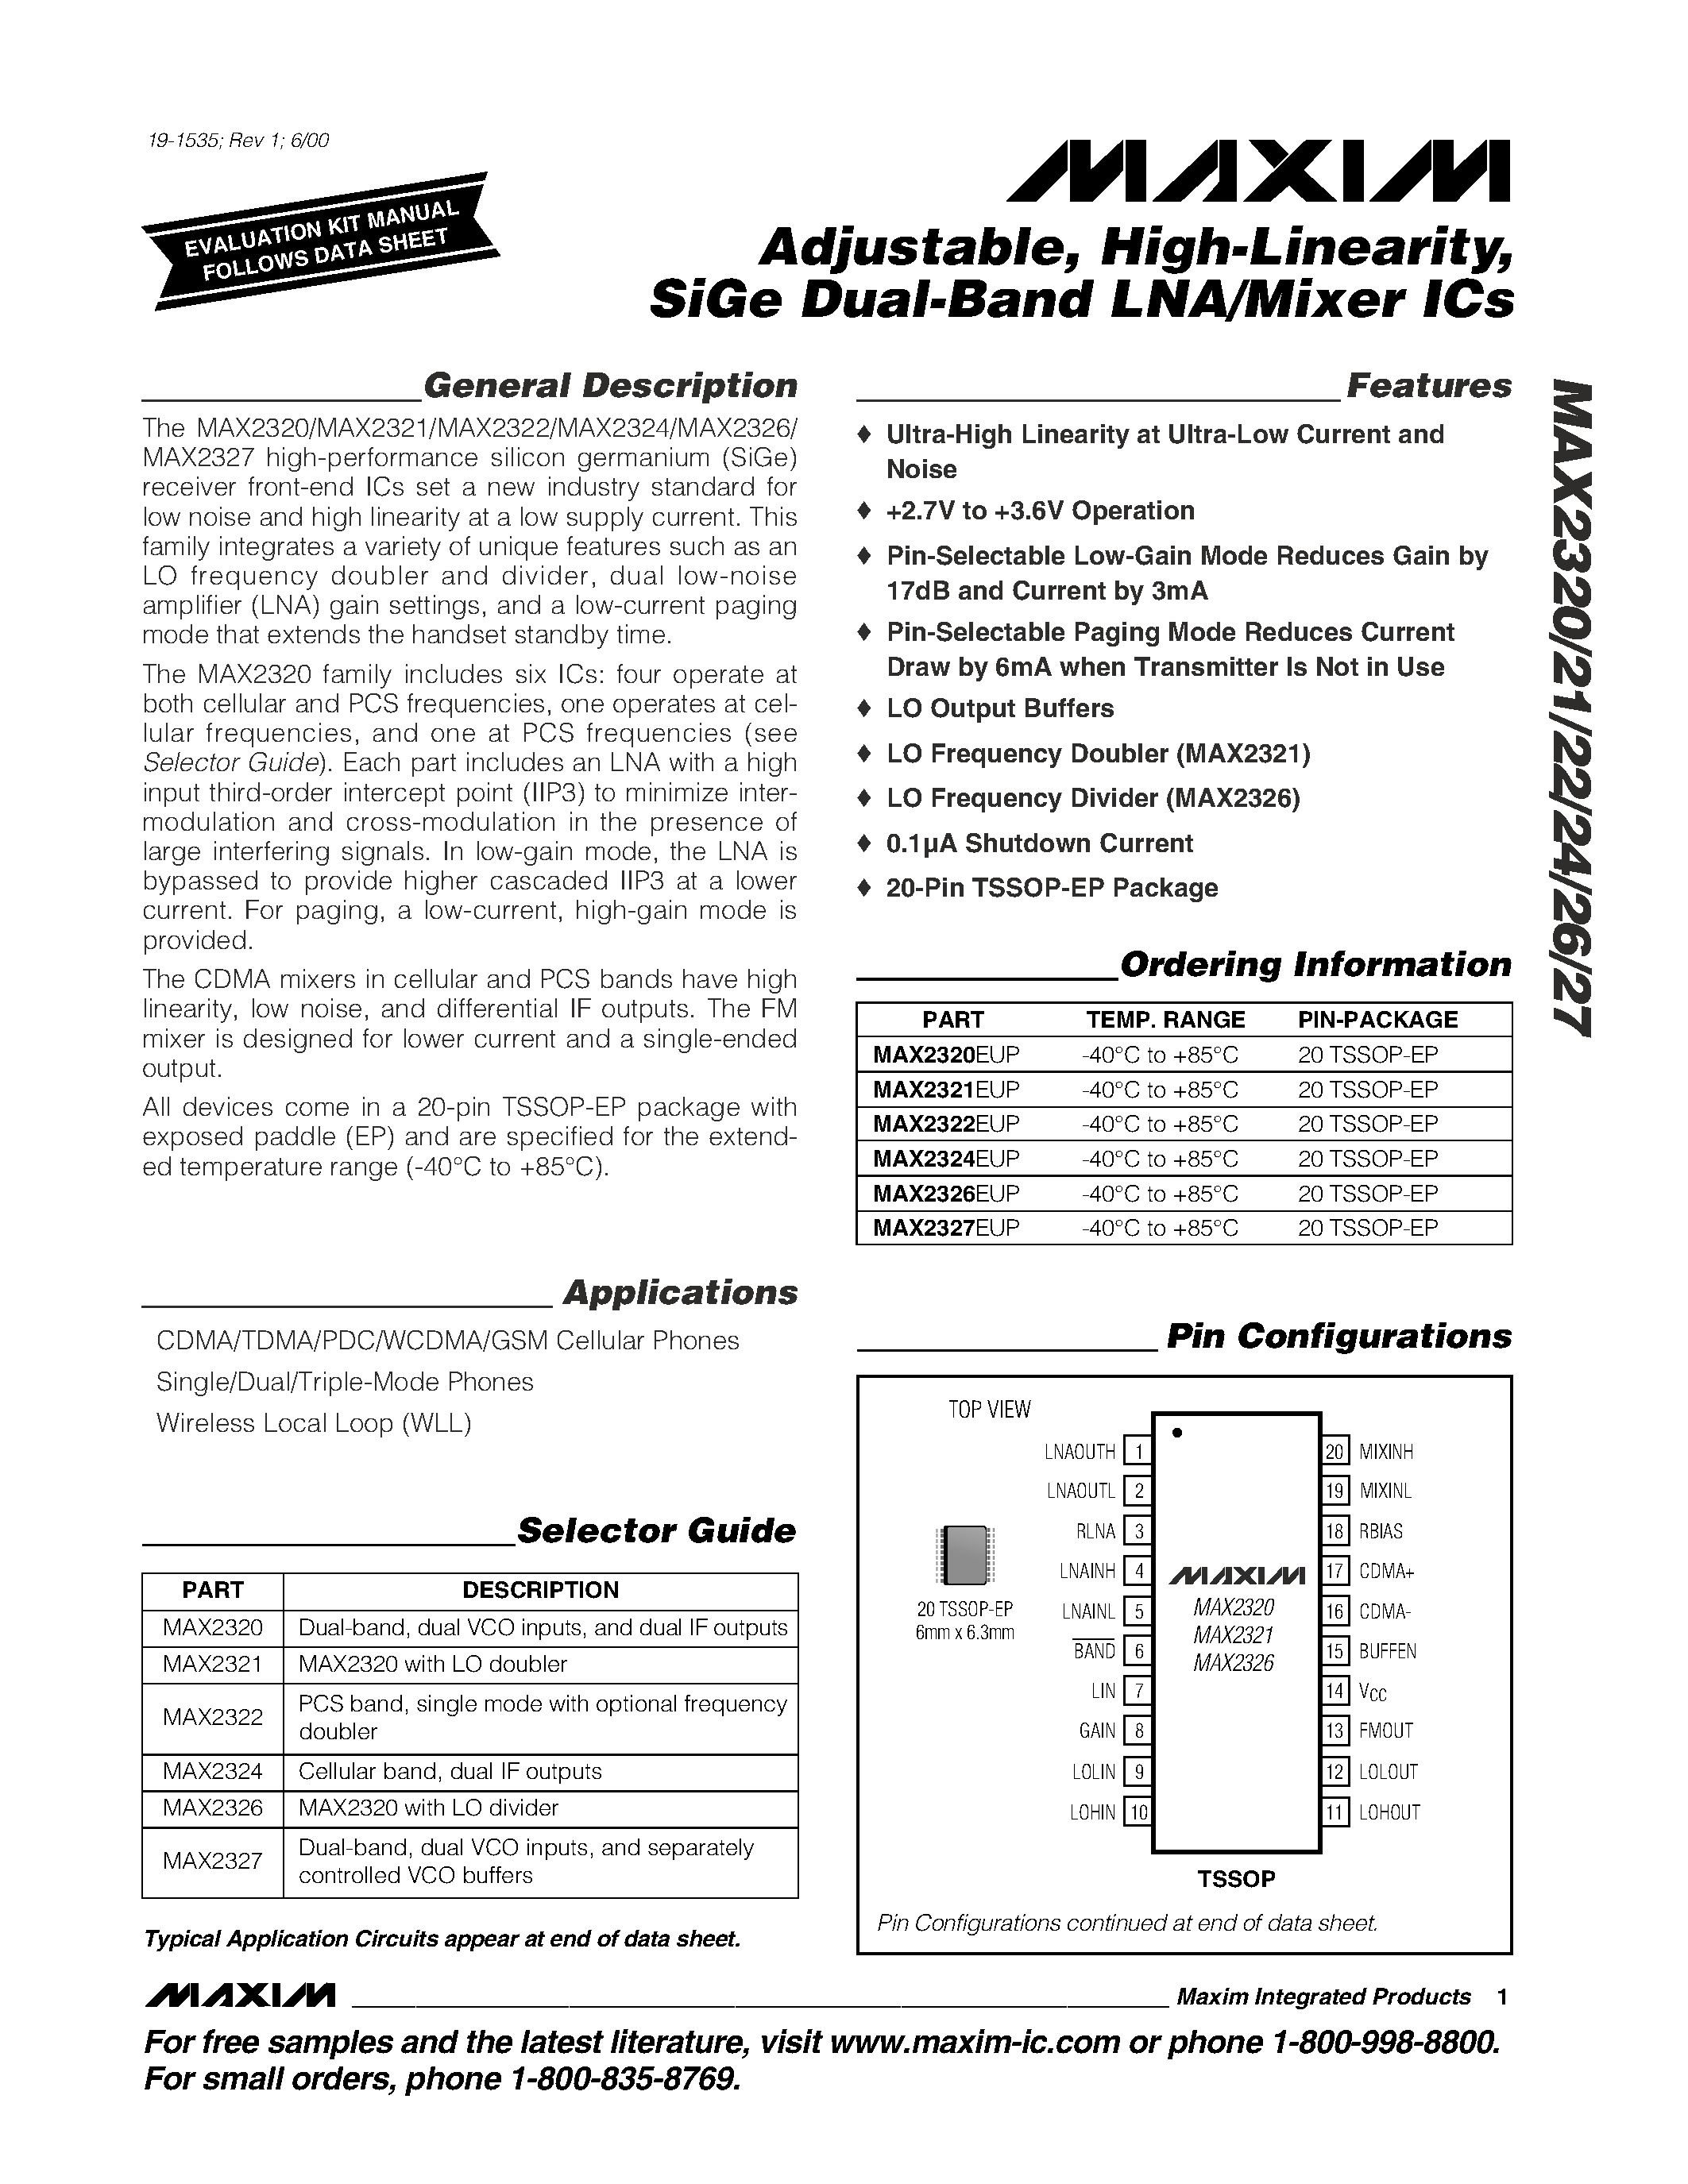 Даташит MAX2324EUP - Adjustable / High-Linearity / SiGe Dual-Band LNA/Mixer ICs страница 1